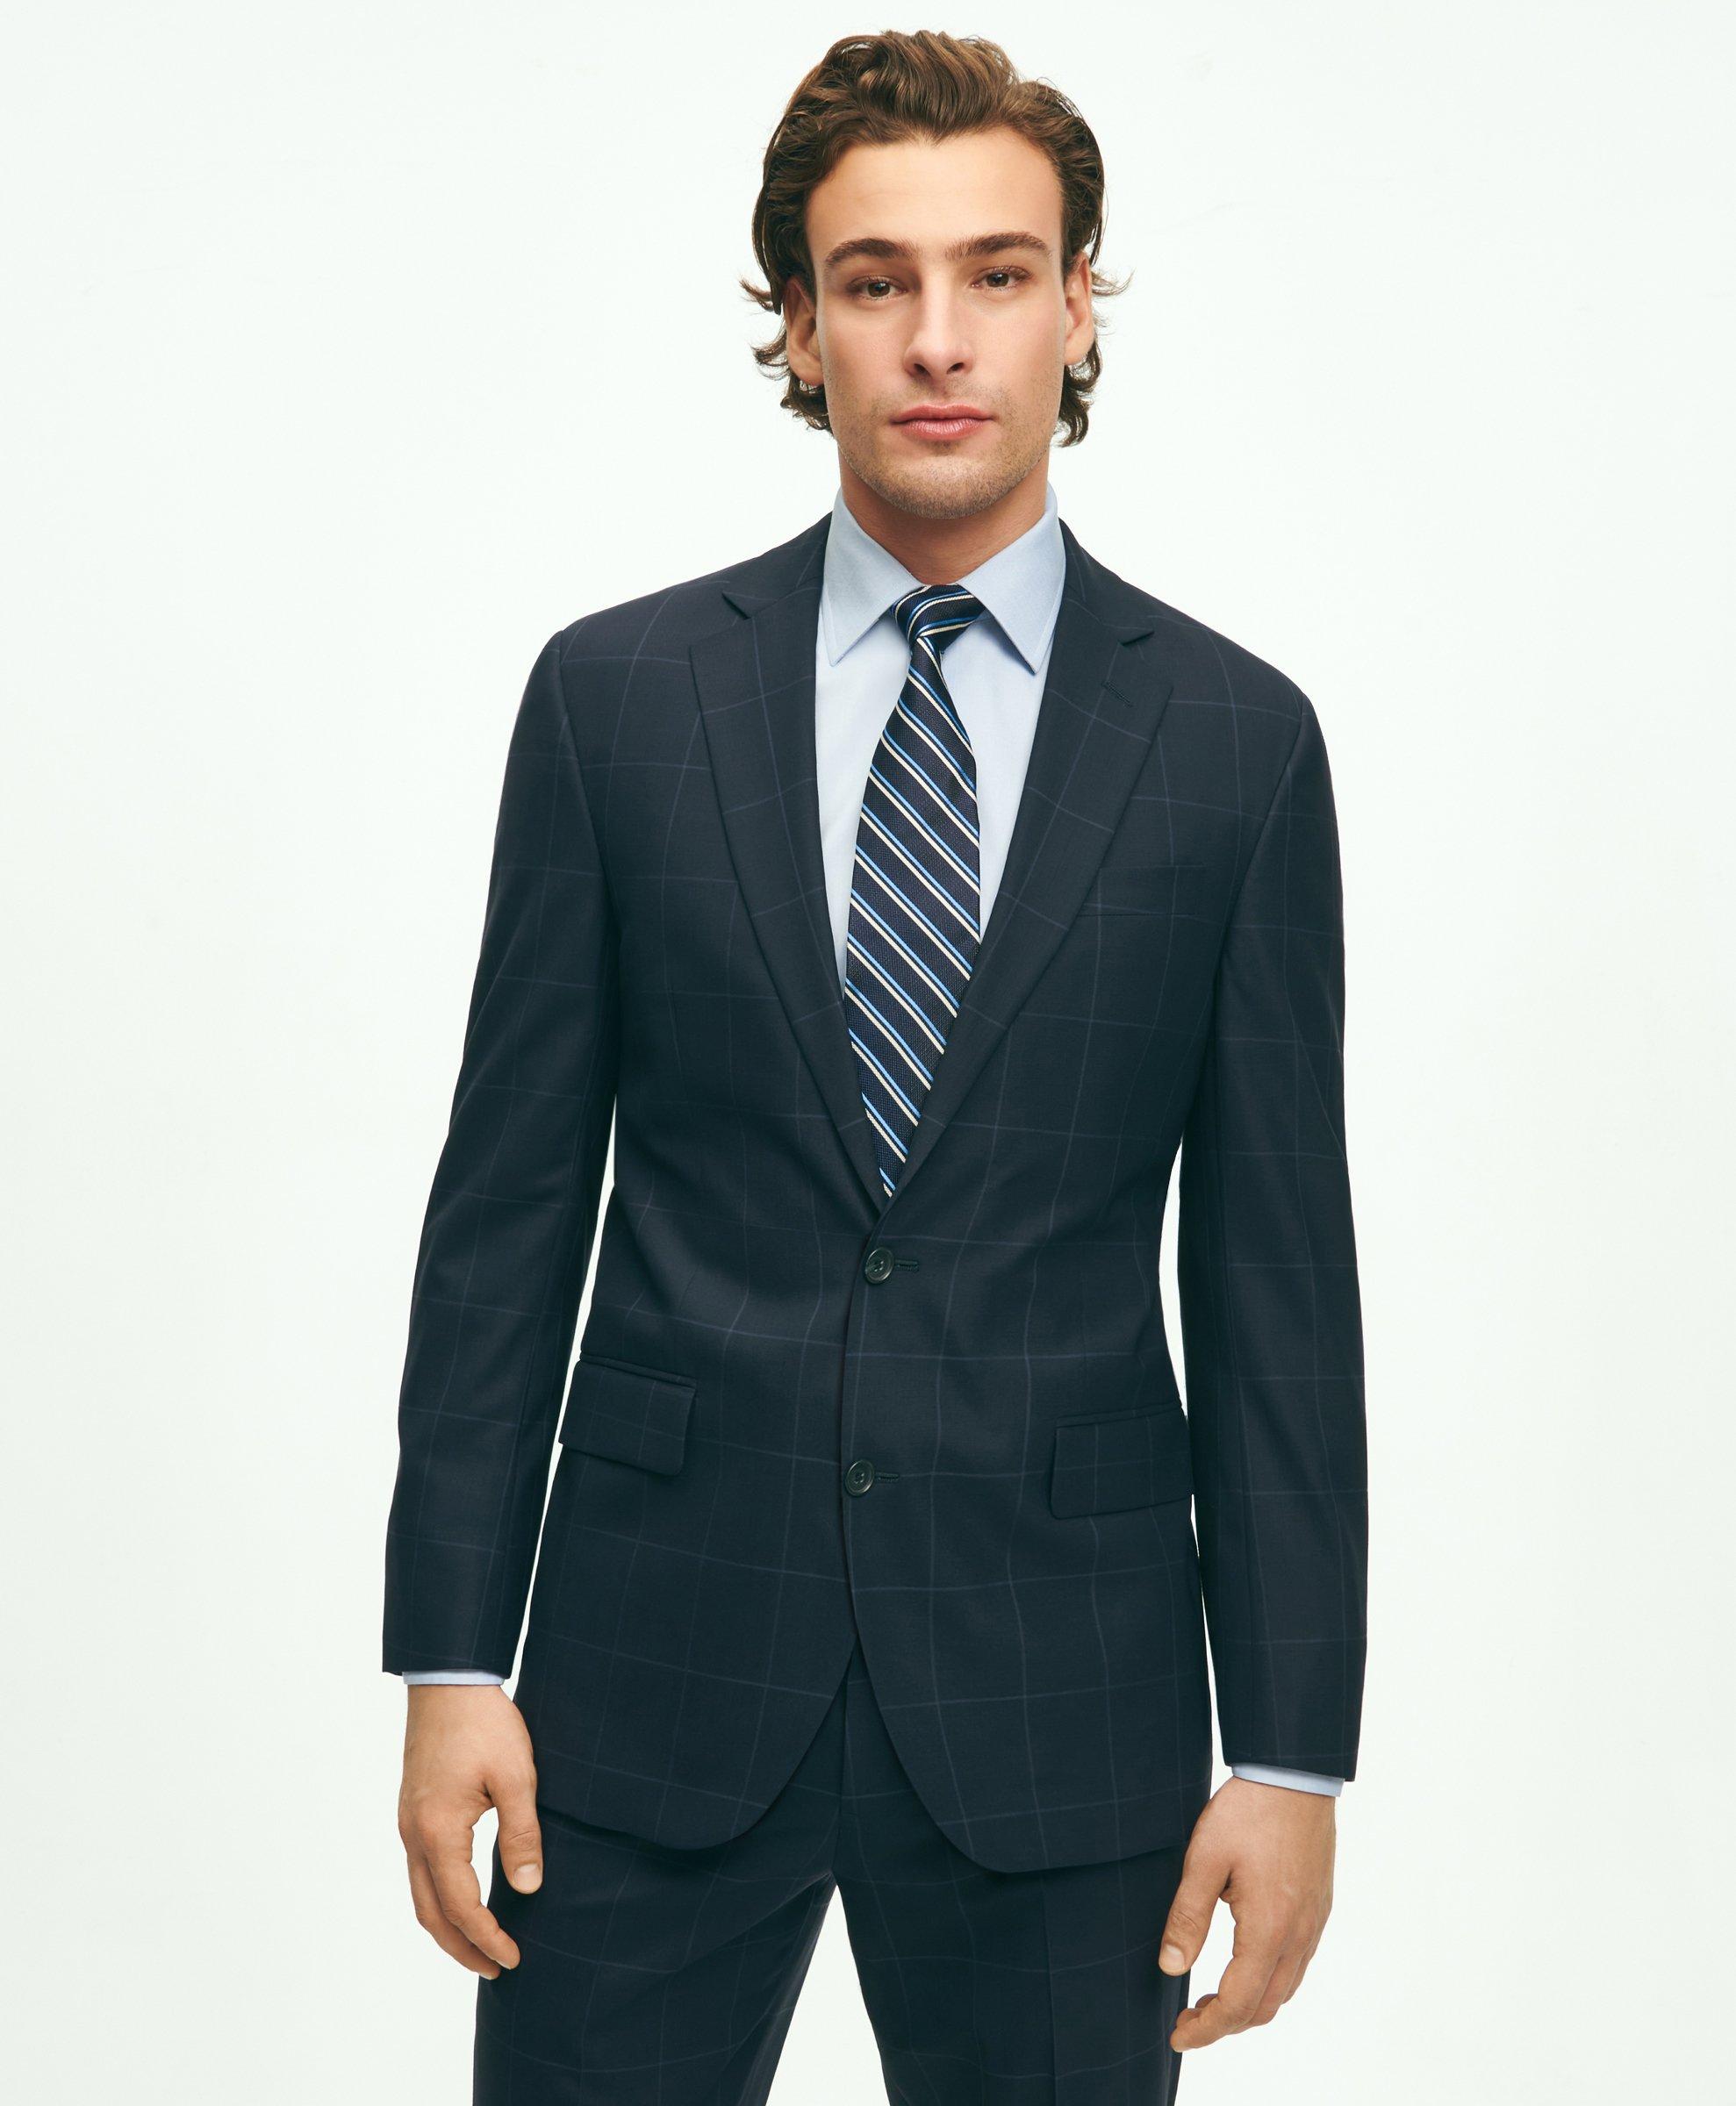 Shop Sale Men's Suits & Suit Separates